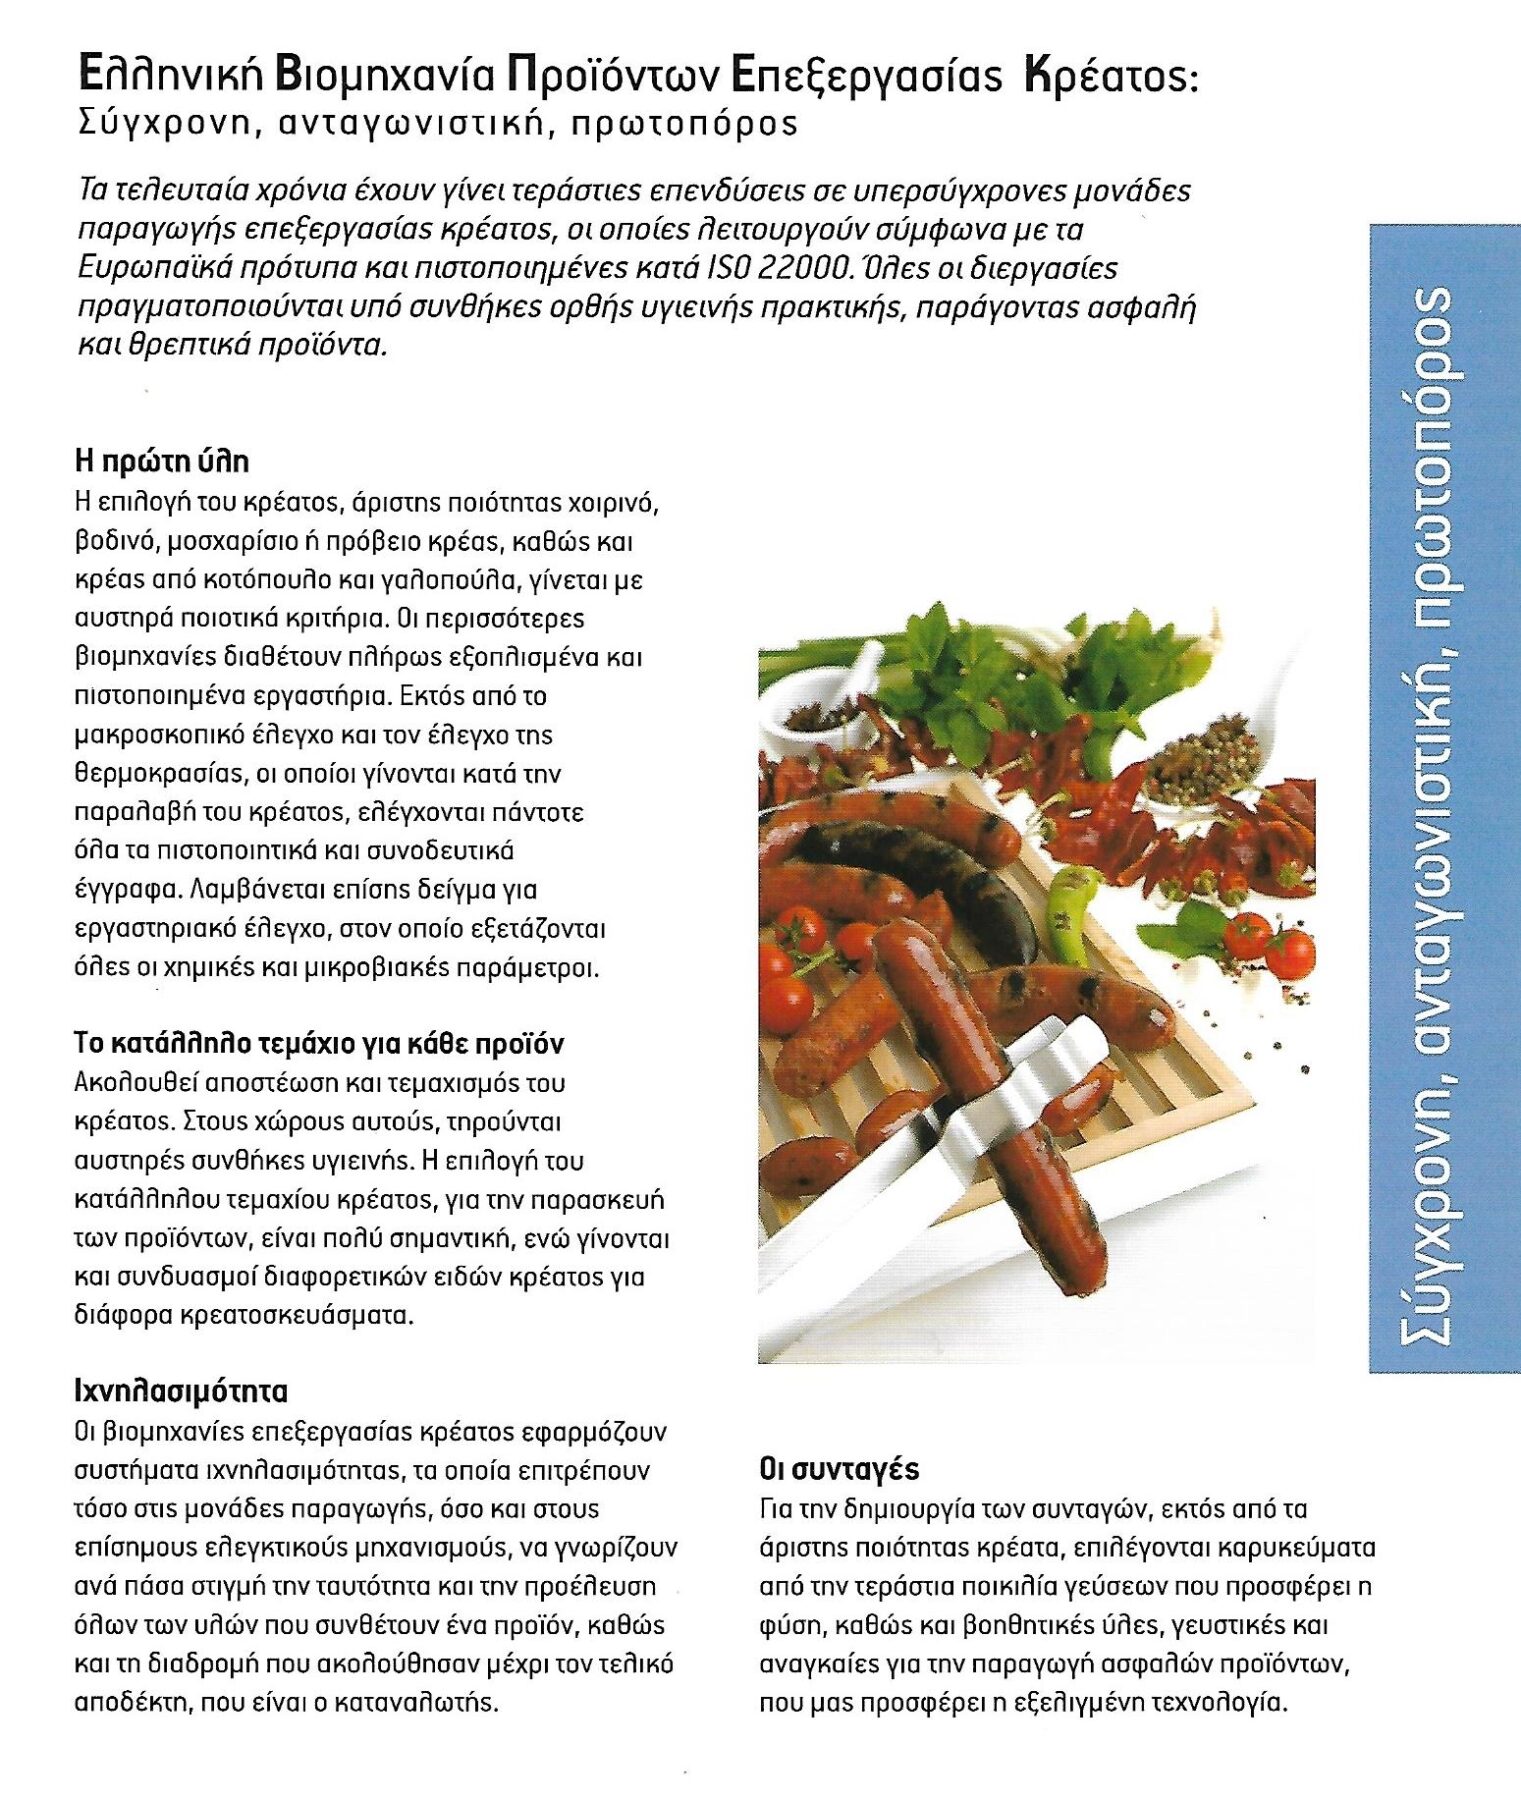 Ελληνική Βιομηχανία Προϊόντων Επεξεργασίας Κρέατος.         Σύγχρονη, Ανταγωνιστική, Πρωτοπόρος